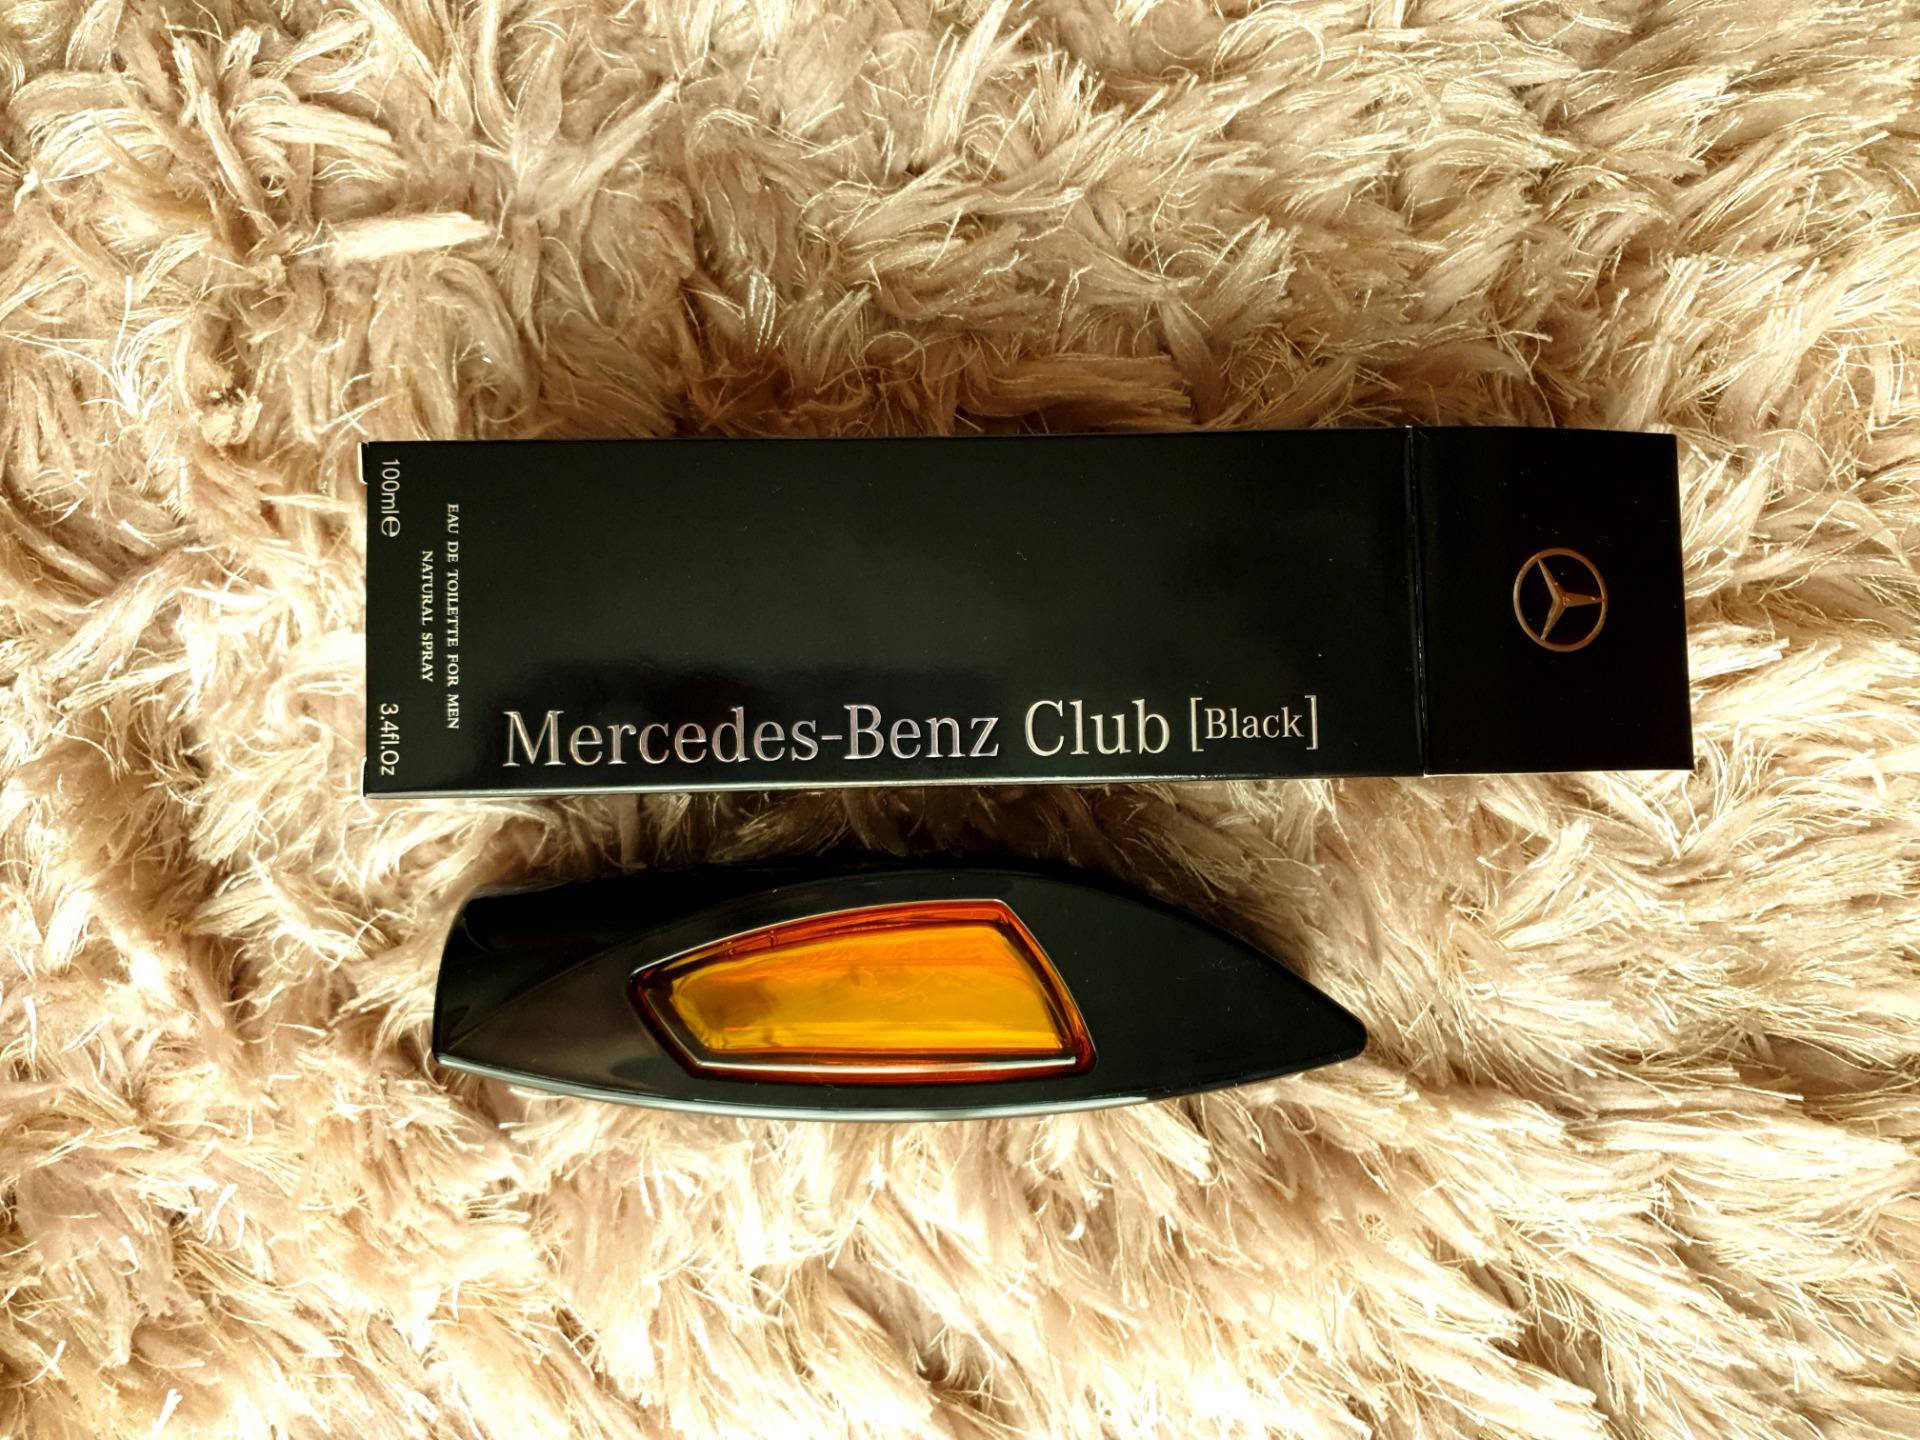 Mercedes-Benz Club Black woda toaletowa 100ml - Opinie i ceny na Ceneo.pl